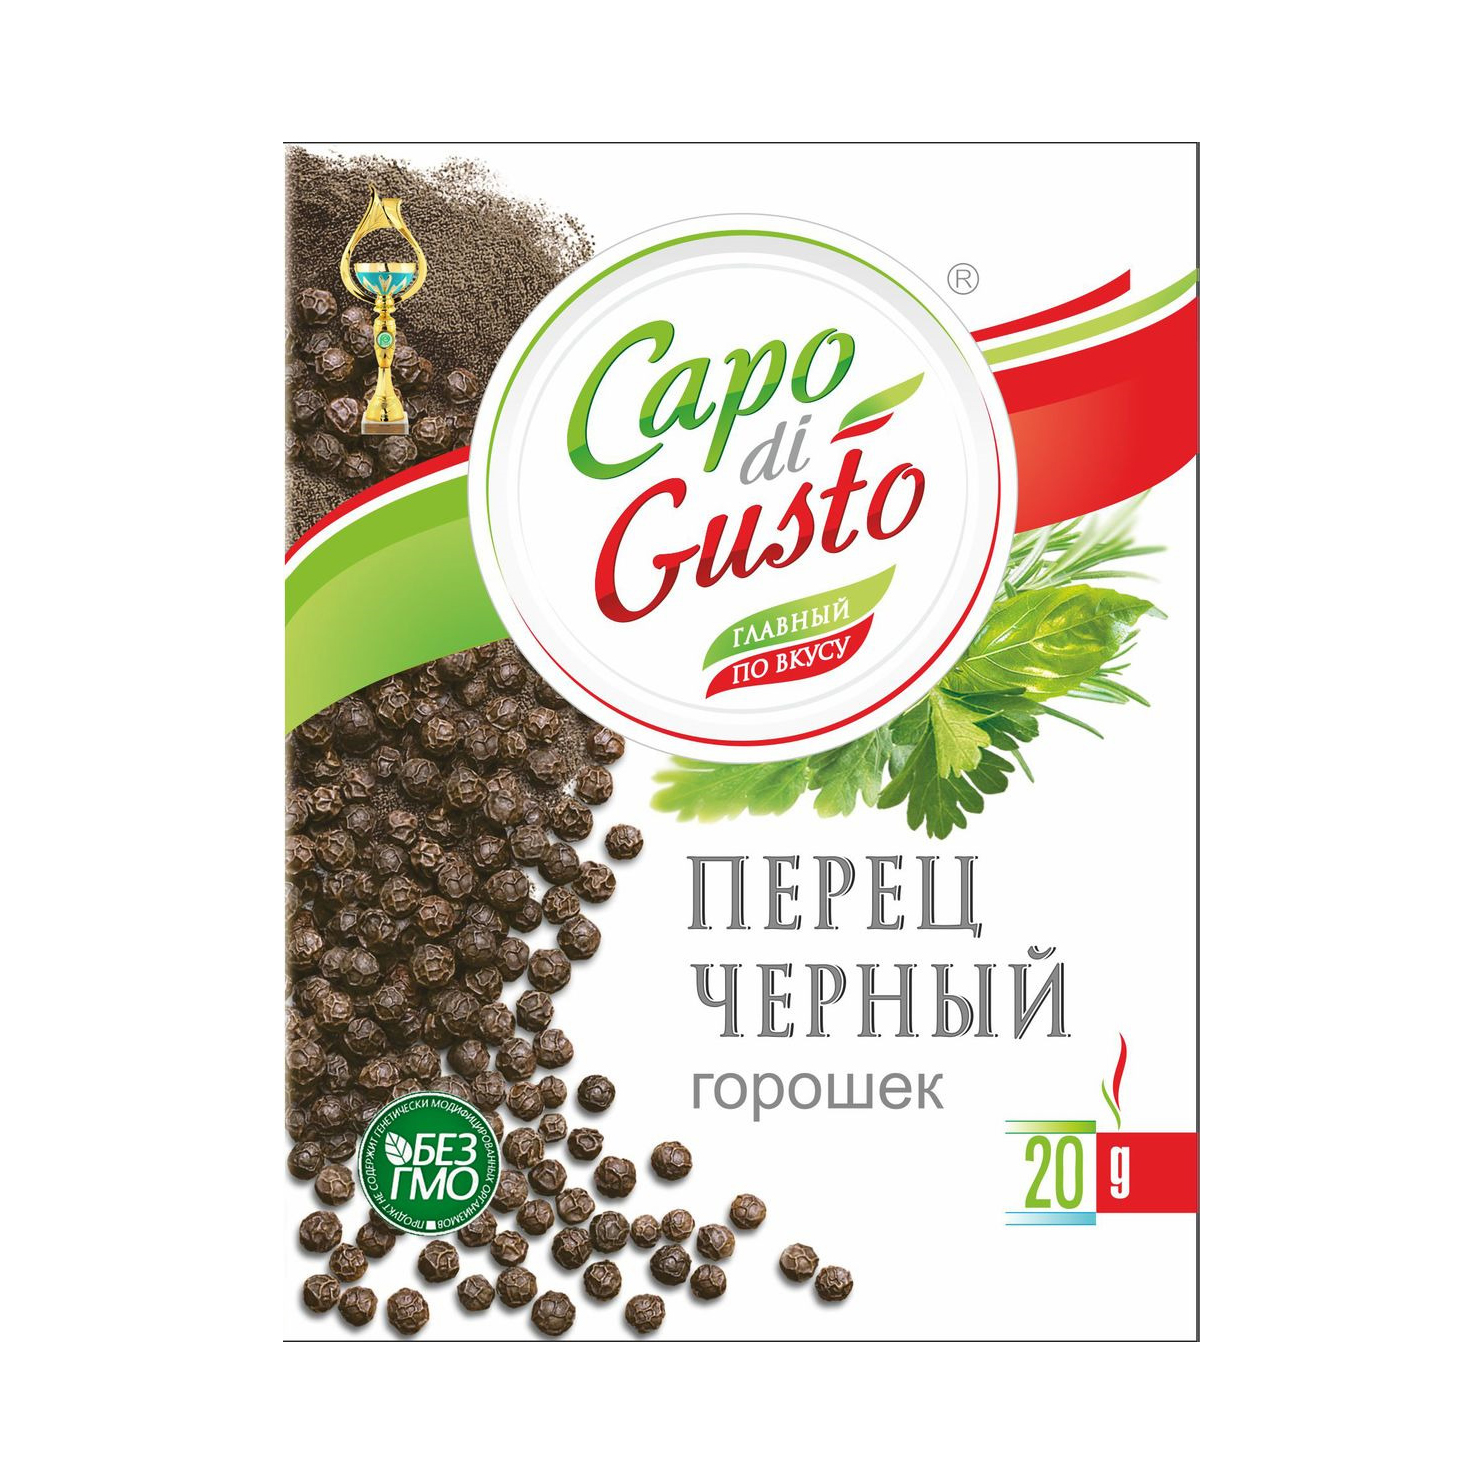 Перец черный горошек Capo di Gusto 20 г